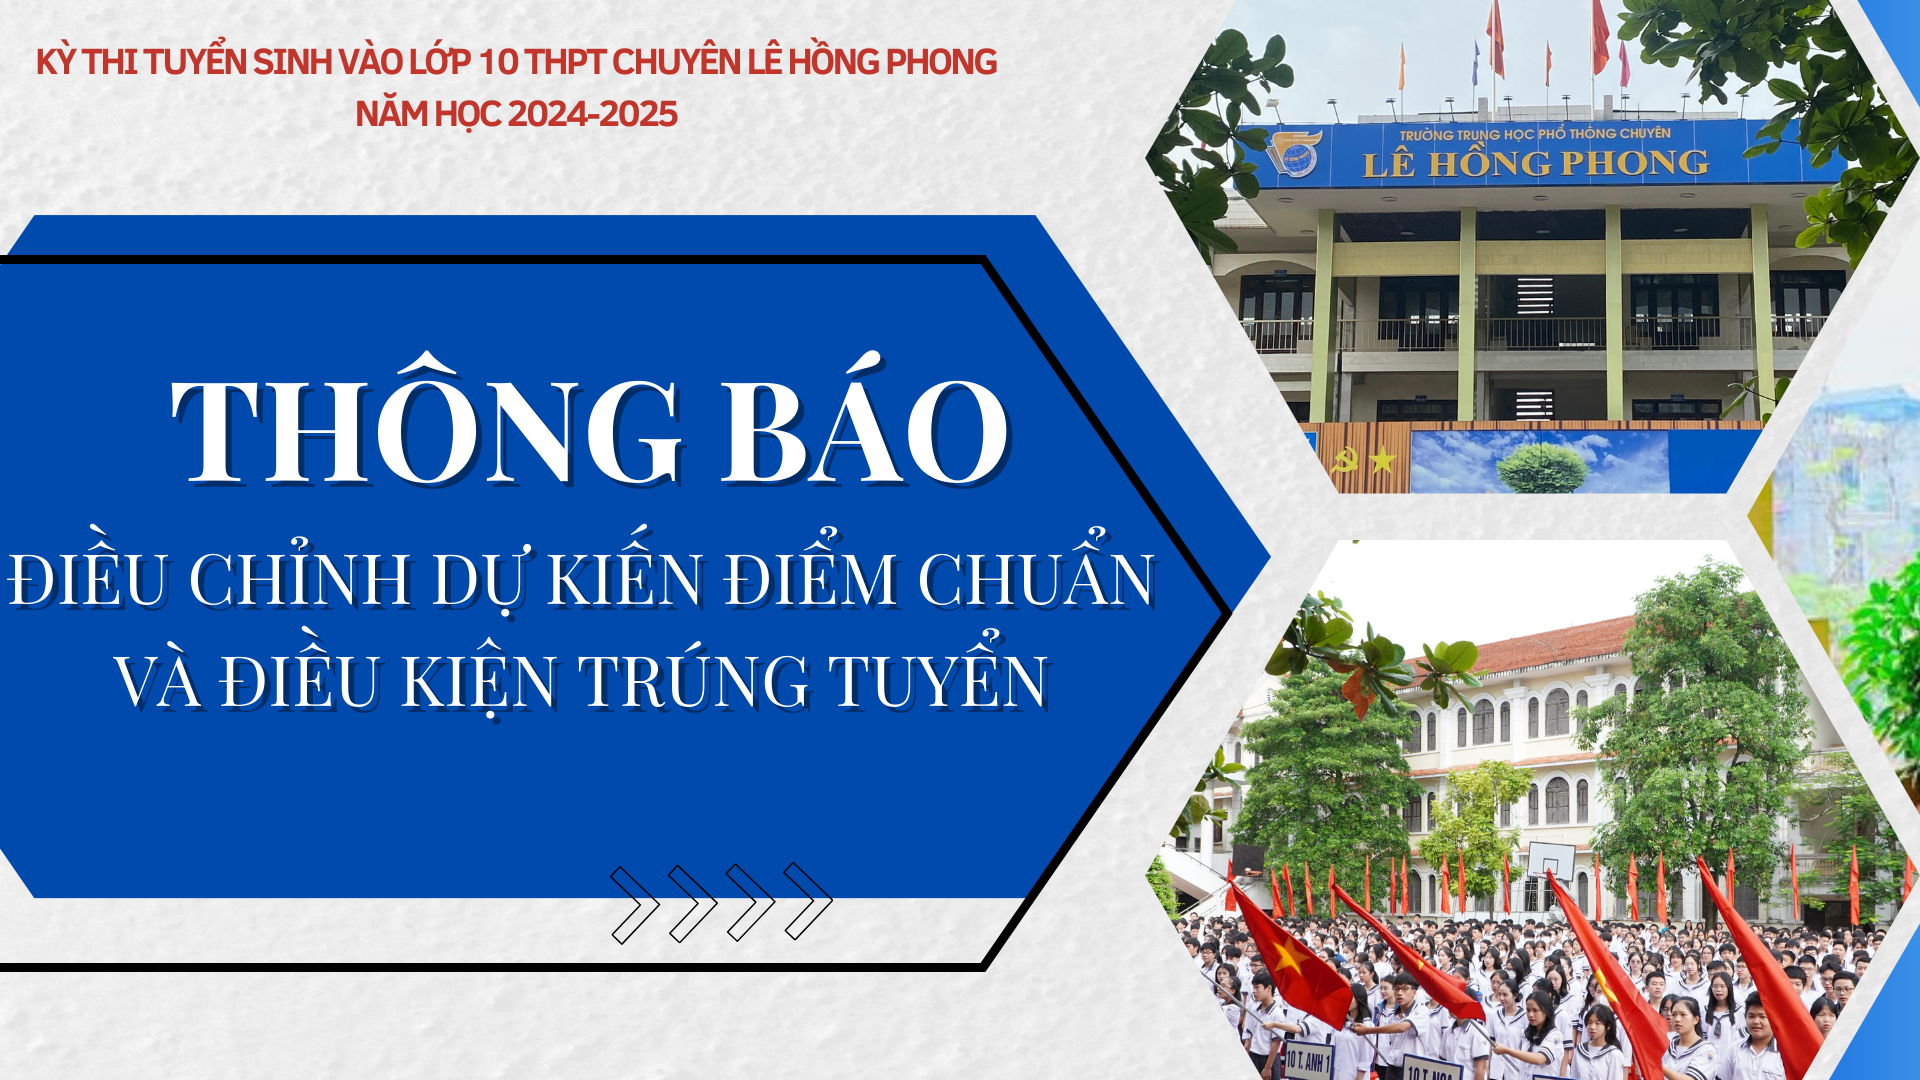 Thông báo Điều chỉnh dự kiến điểm chuẩn và Điều kiện trúng tuyển kì thi tuyển sinh vào lớp 10 trường THPT chuyên Lê Hồng Phong năm học 2024-2025